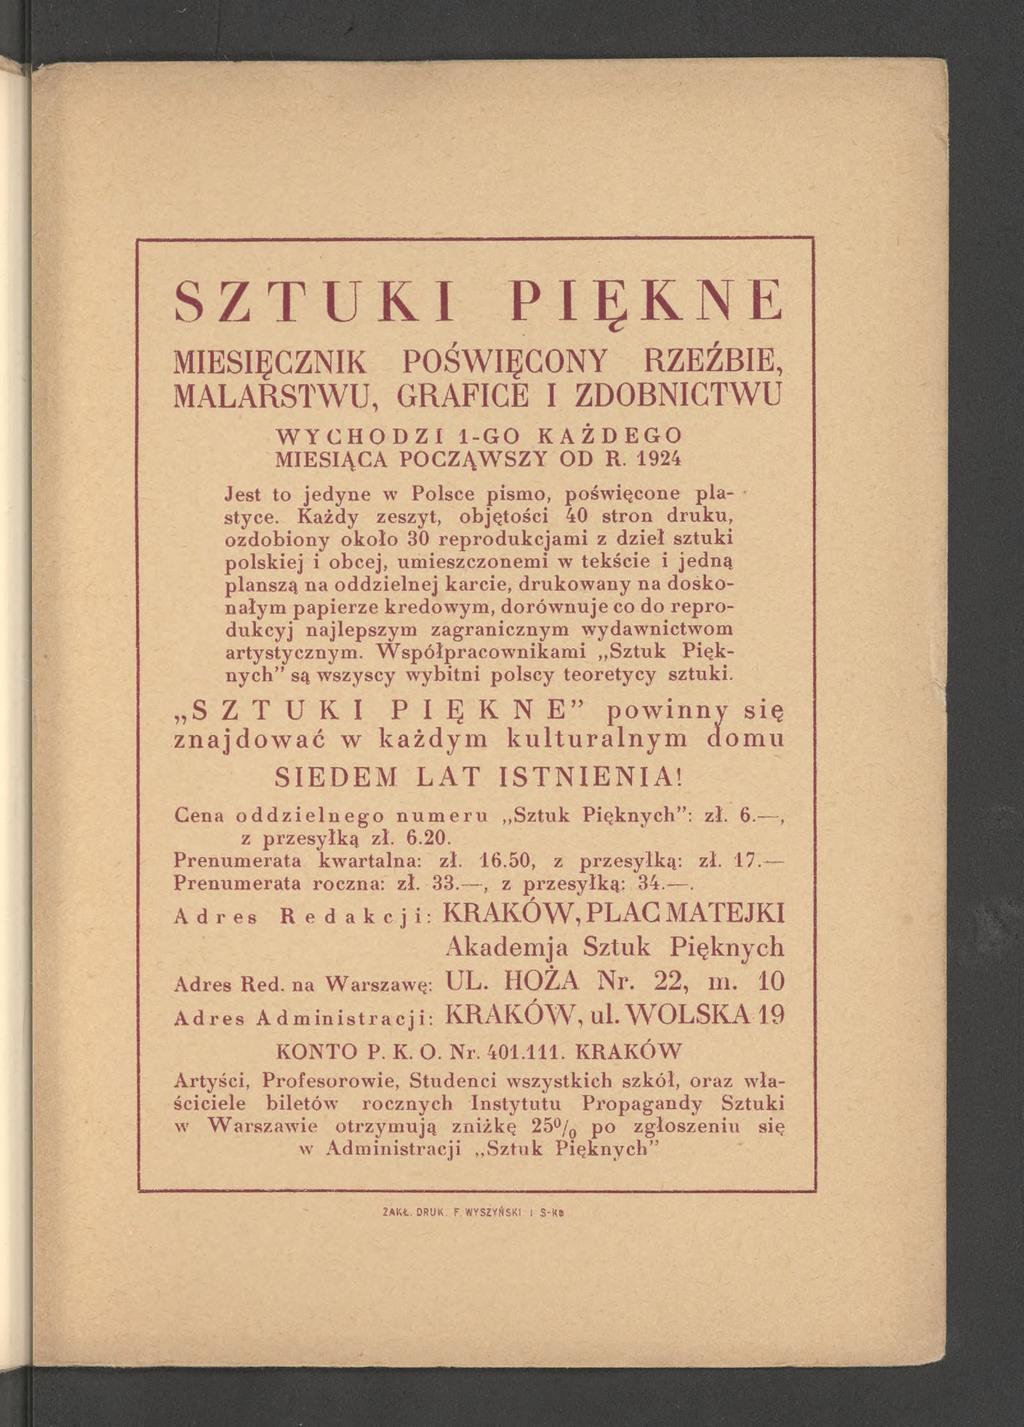 SZTUKI PIĘKNE MIESIĘCZNIK POŚWIĘCONY RZEŹBIE, MALARSTWU, GRAFICE I ZDOBNICTWU WYCHODZI 1-GO KAŻDEGO MIESIĄCA POCZĄWSZY OD R. 1924 Jest to jedyne w Polsce pismo, poświęcone pla- i styce.